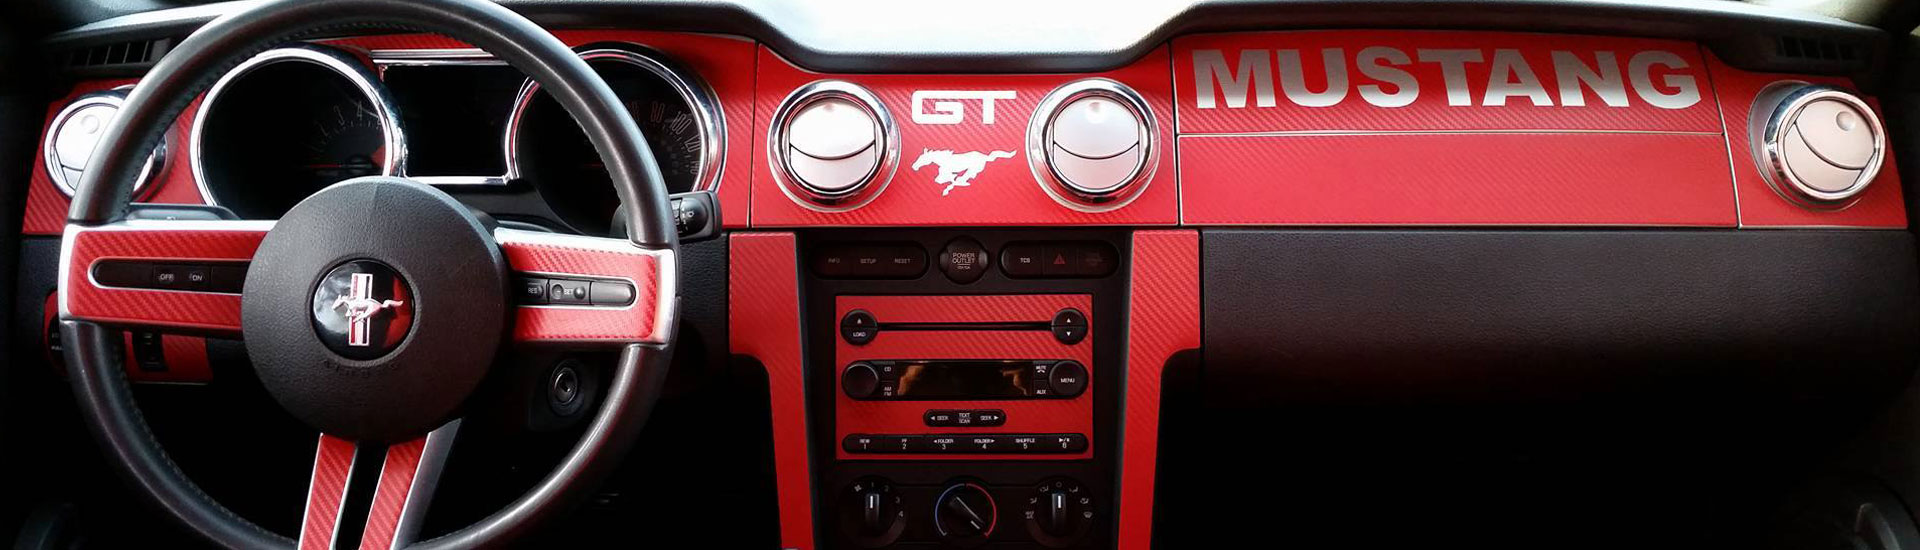 Ford Mustang Dash Kit | Mustang Dash Kits